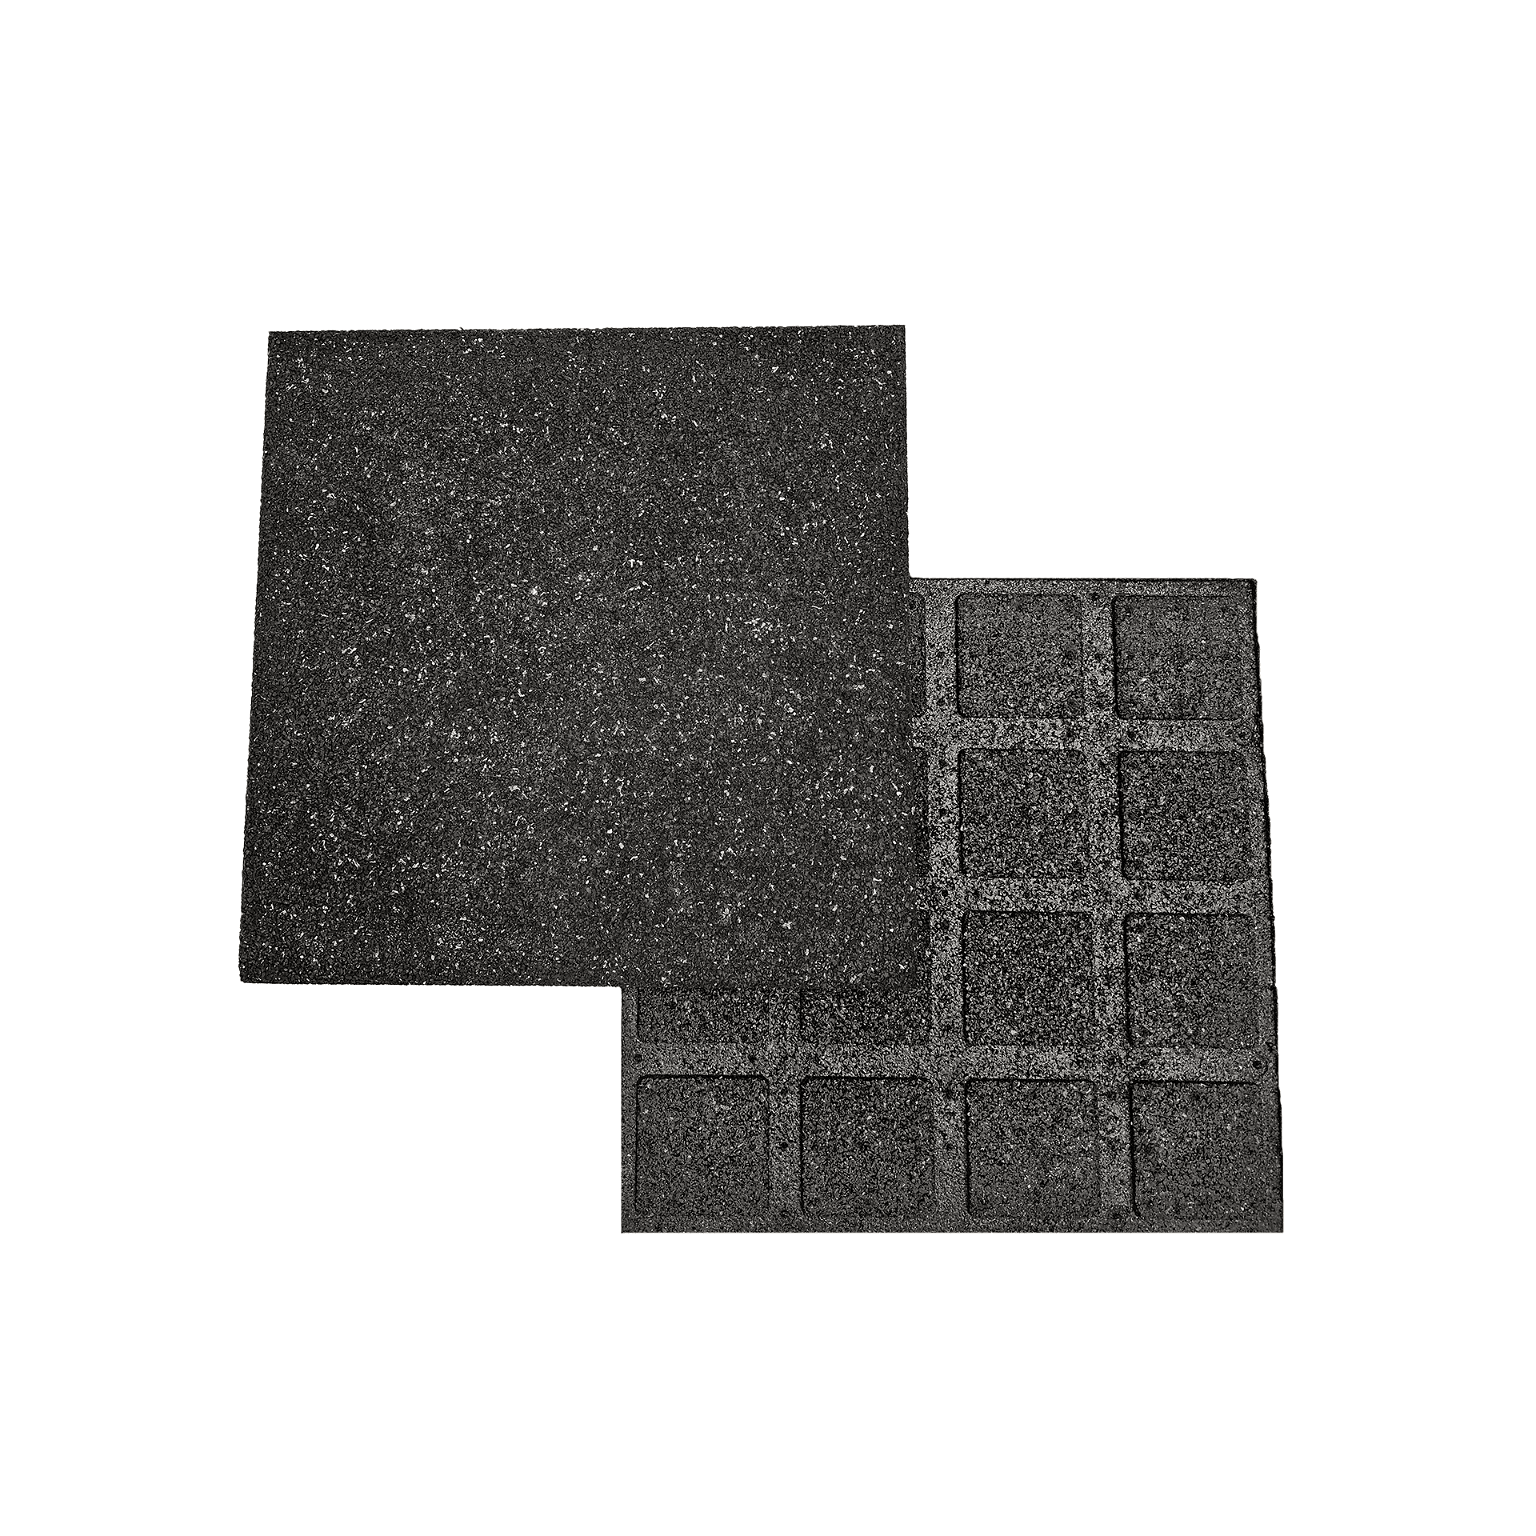 Guminė grindų danga vaikų žaidimų aikštelėms 20 mm, juoda